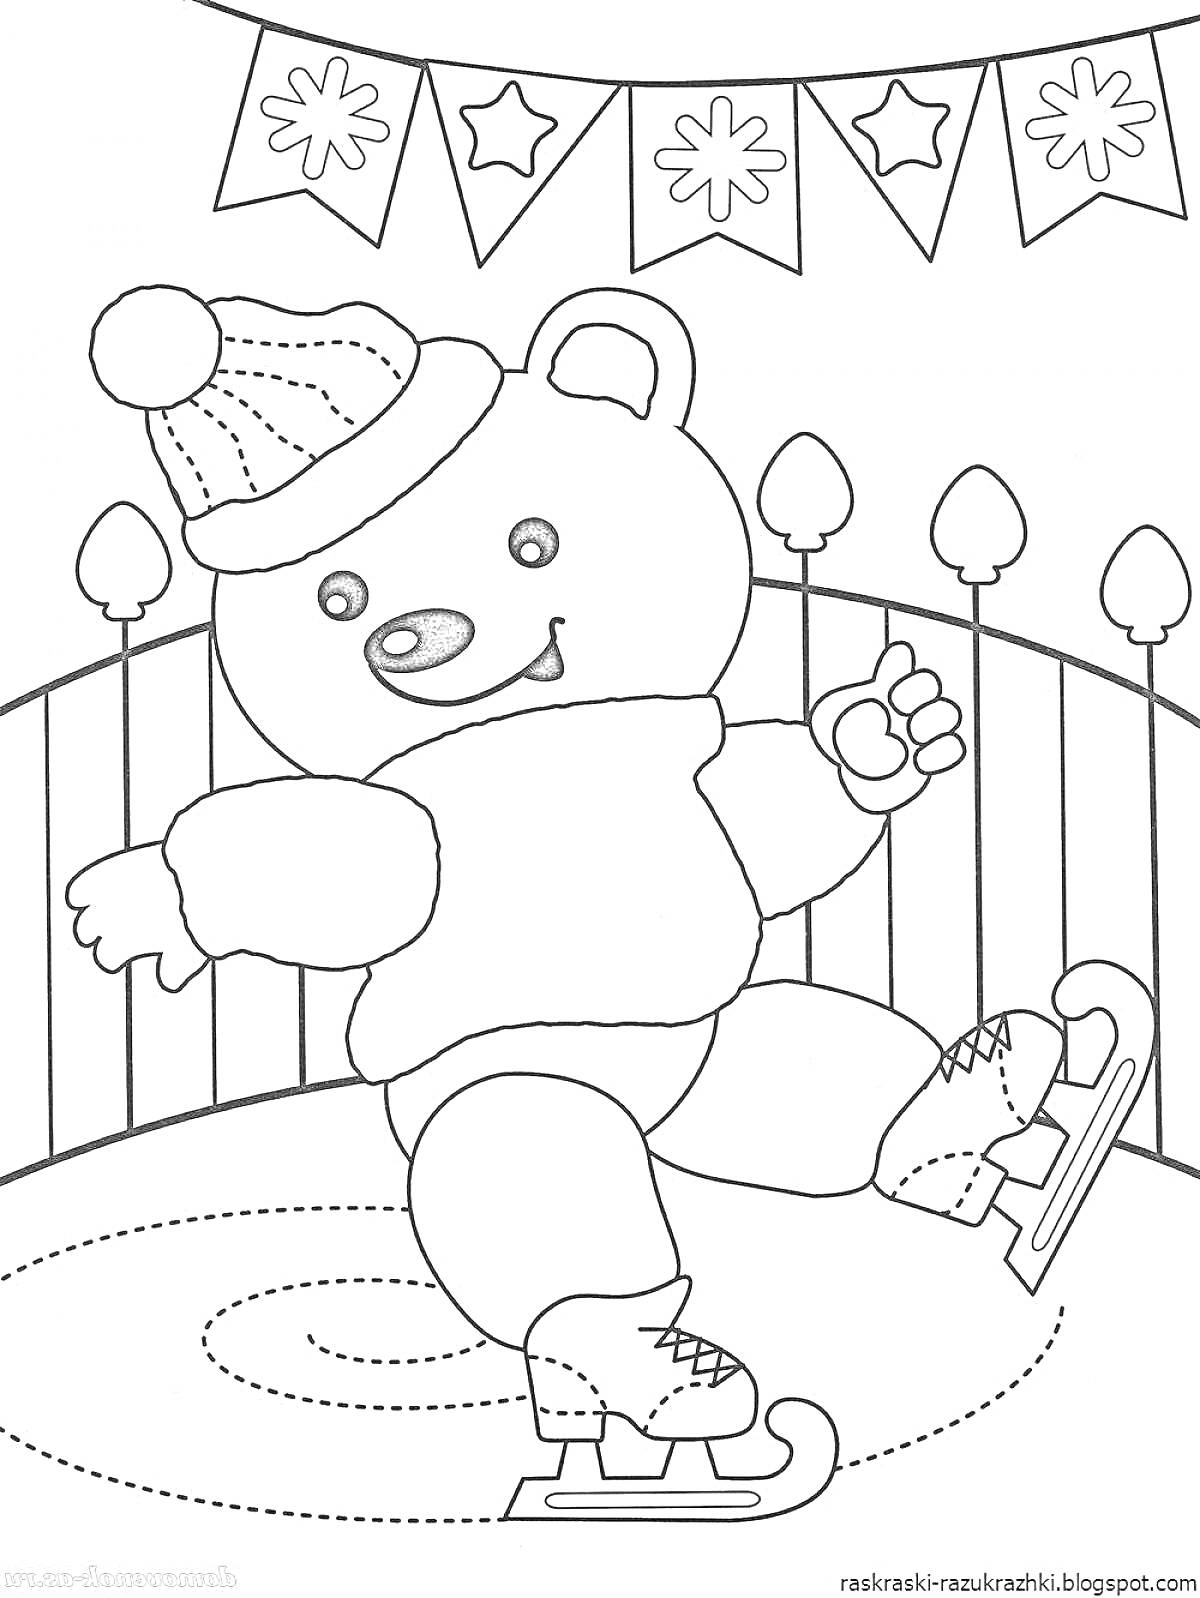 Раскраска Медвежонок на коньках в зимней шапке, с гирляндой из флажков со снежинками на заднем плане, на катке с ограждением